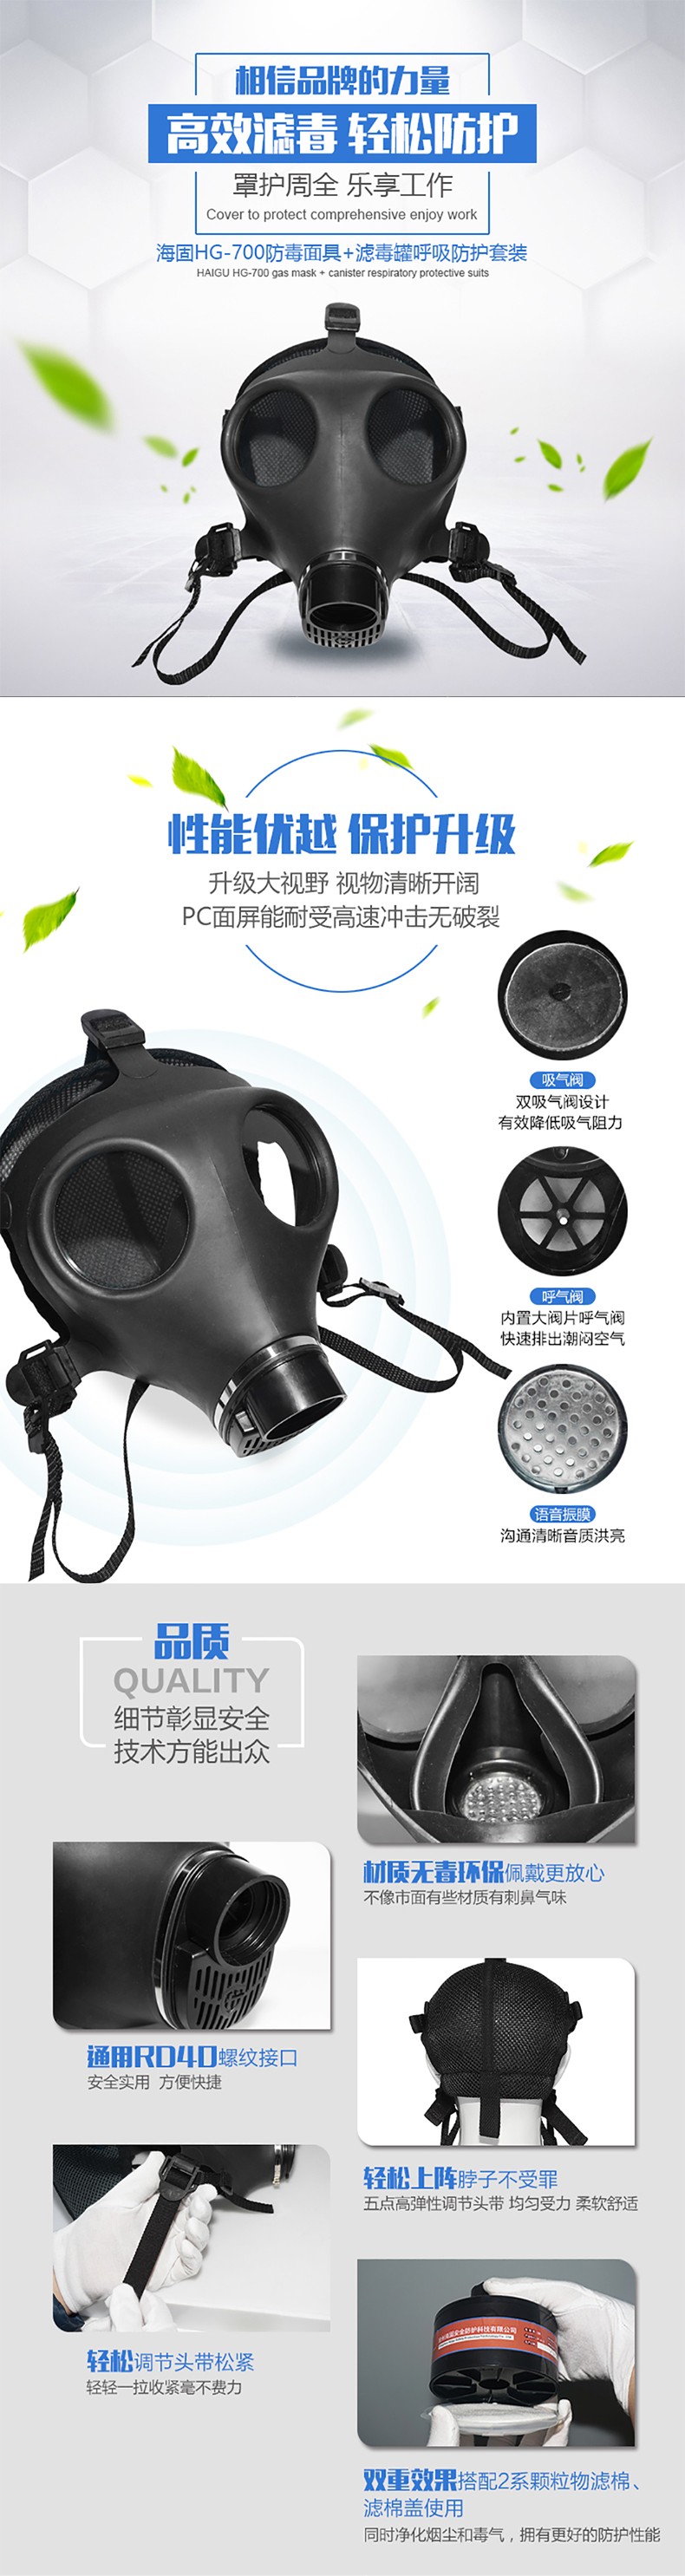 海固HG-700 D-A/B/E/K/H2S-3滤毒罐综合防毒气活性炭防毒面具图片